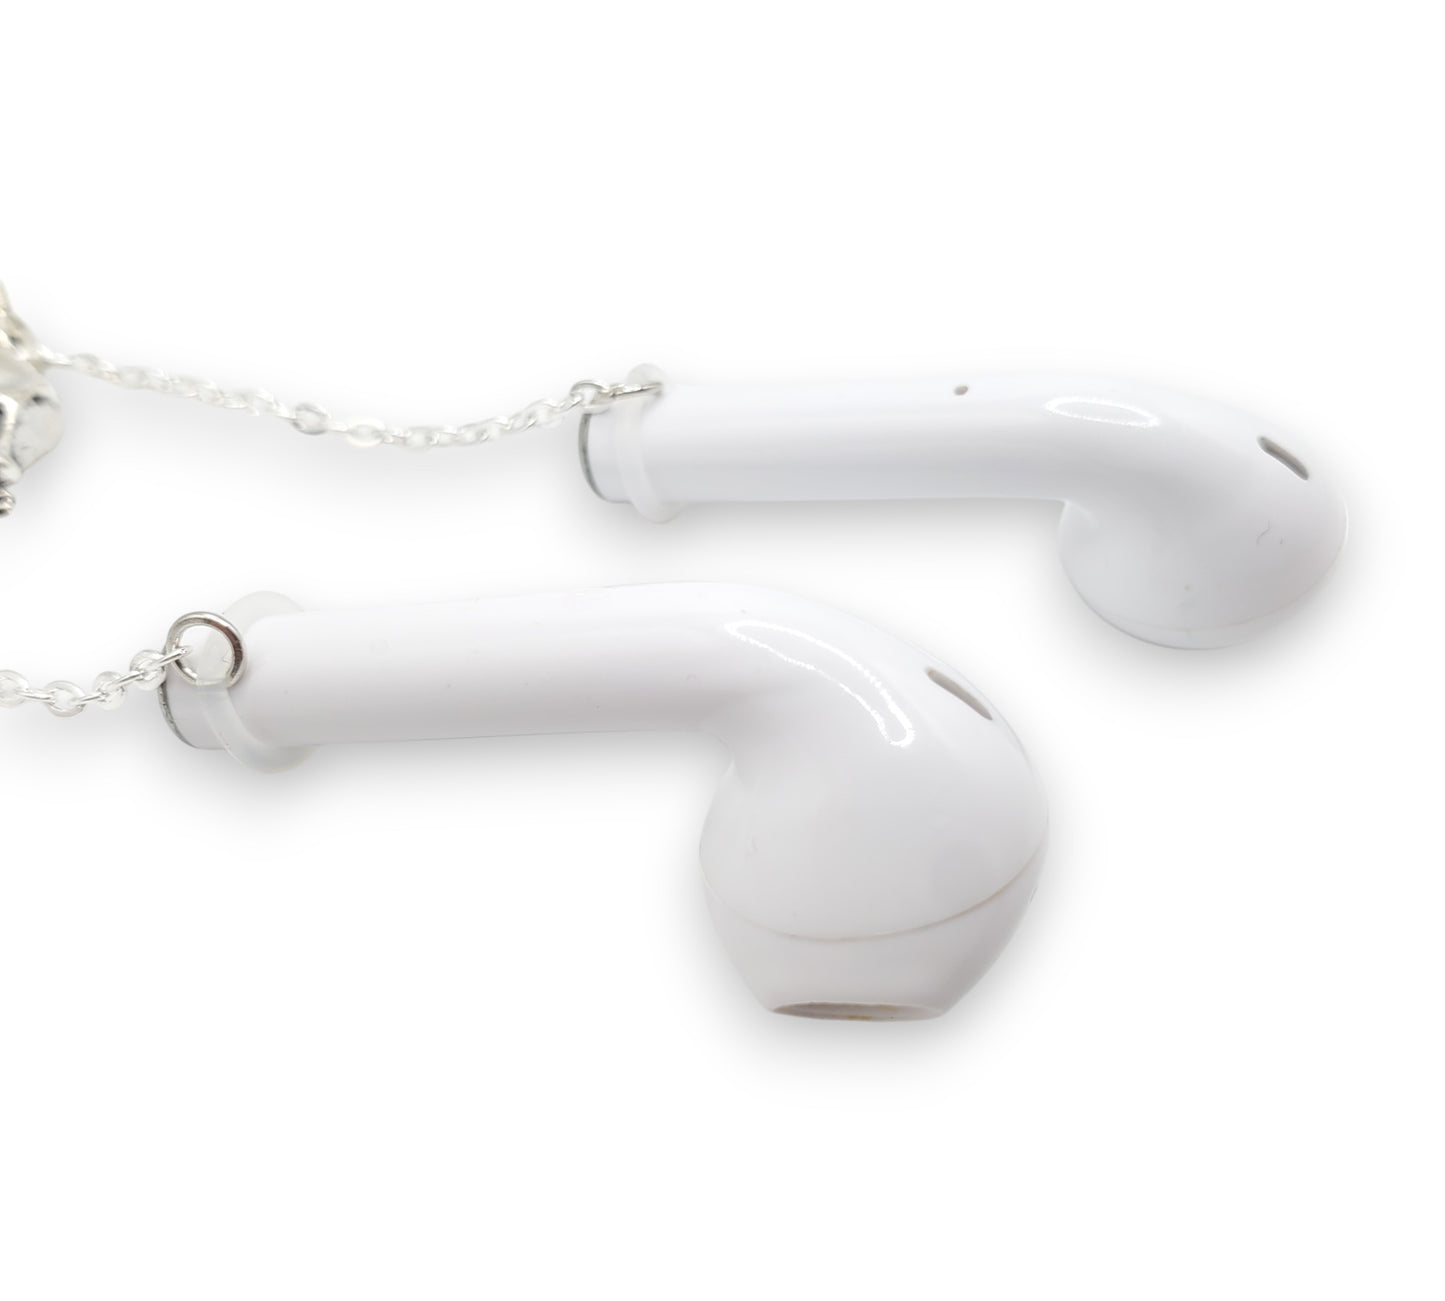 Boucles d'oreilles et manchettes d'oreille Anti-perte avec chaîne de câble noire, pour écouteurs/écouteurs sans fil